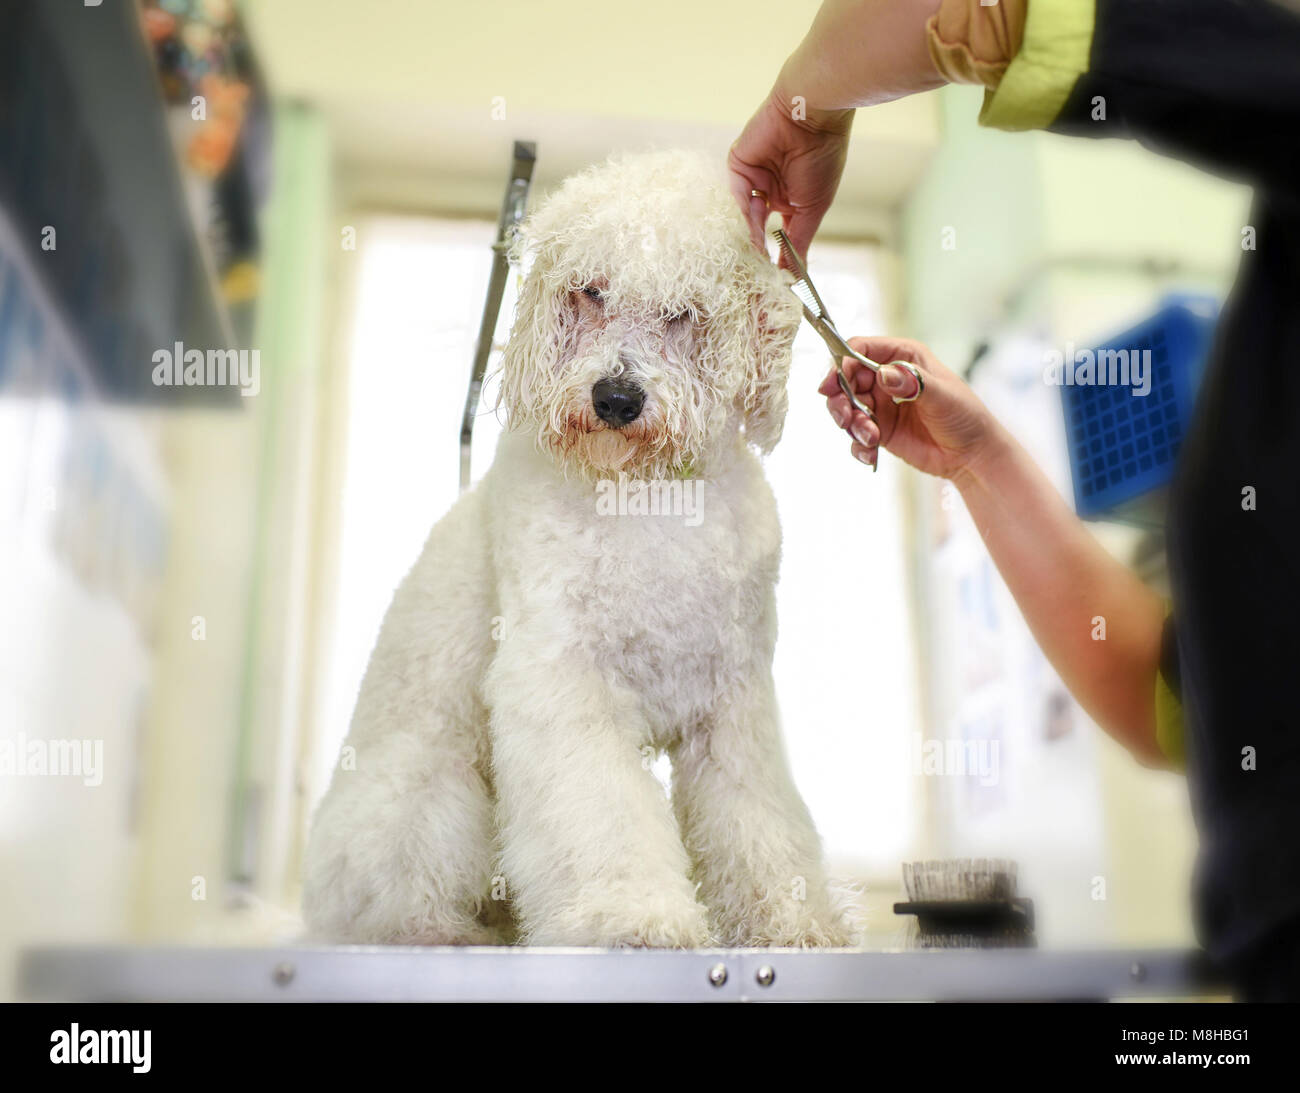 Le fraisage soigneusement toiletteur long manteau d'un petit chien blanc autour des oreilles dans un salon de toilettage ou pet salon car elle se situe sur un établi Banque D'Images